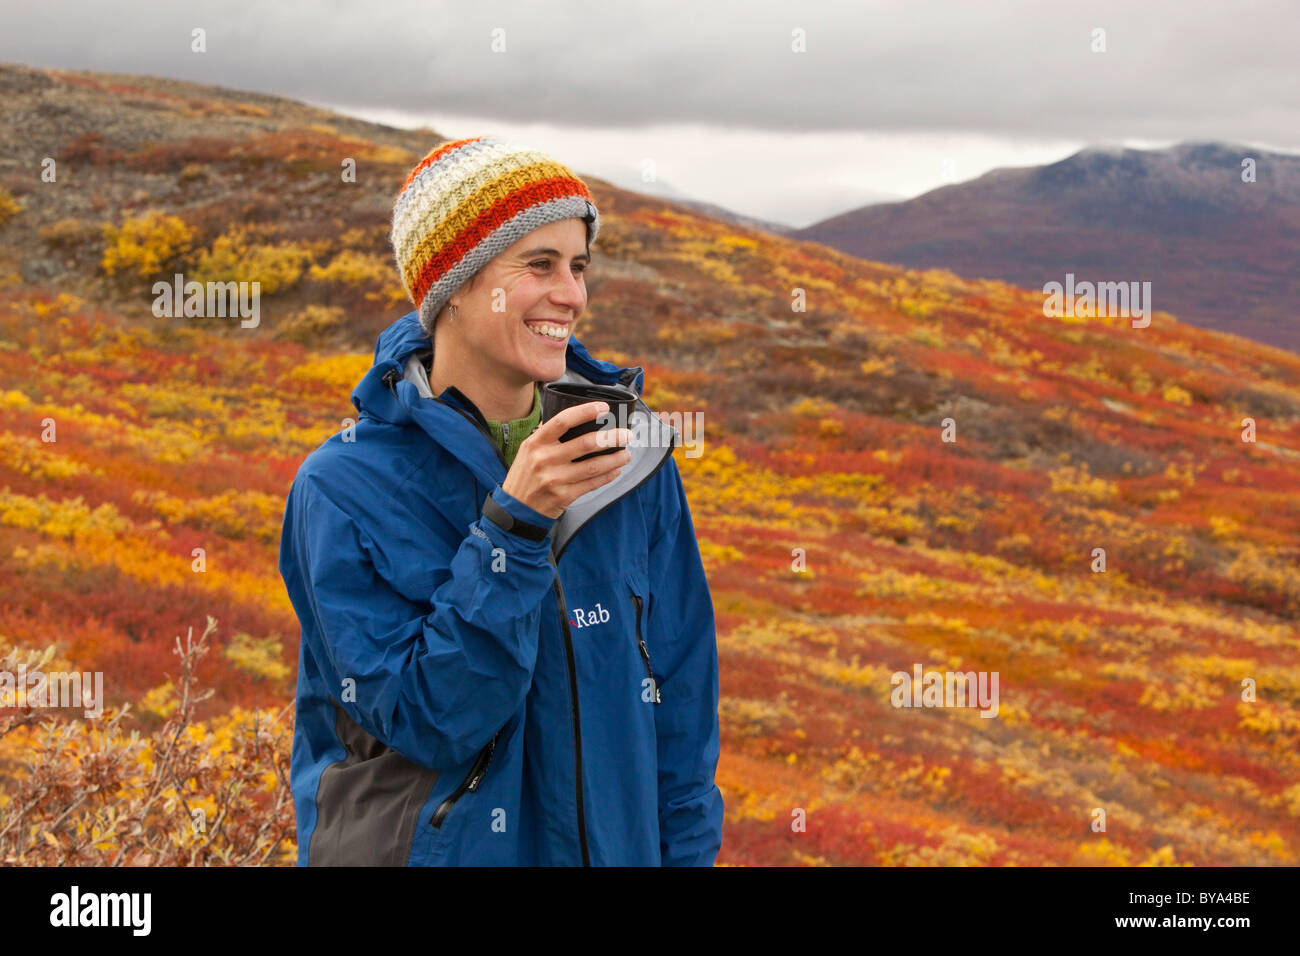 Junge Frau, Wanderer, Lächeln, halten einer Tasse, sub-alpinen Tundra, Indian Summer, verlässt in Herbstfarben, Herbst, in der Nähe von Fish Lake Stockfoto